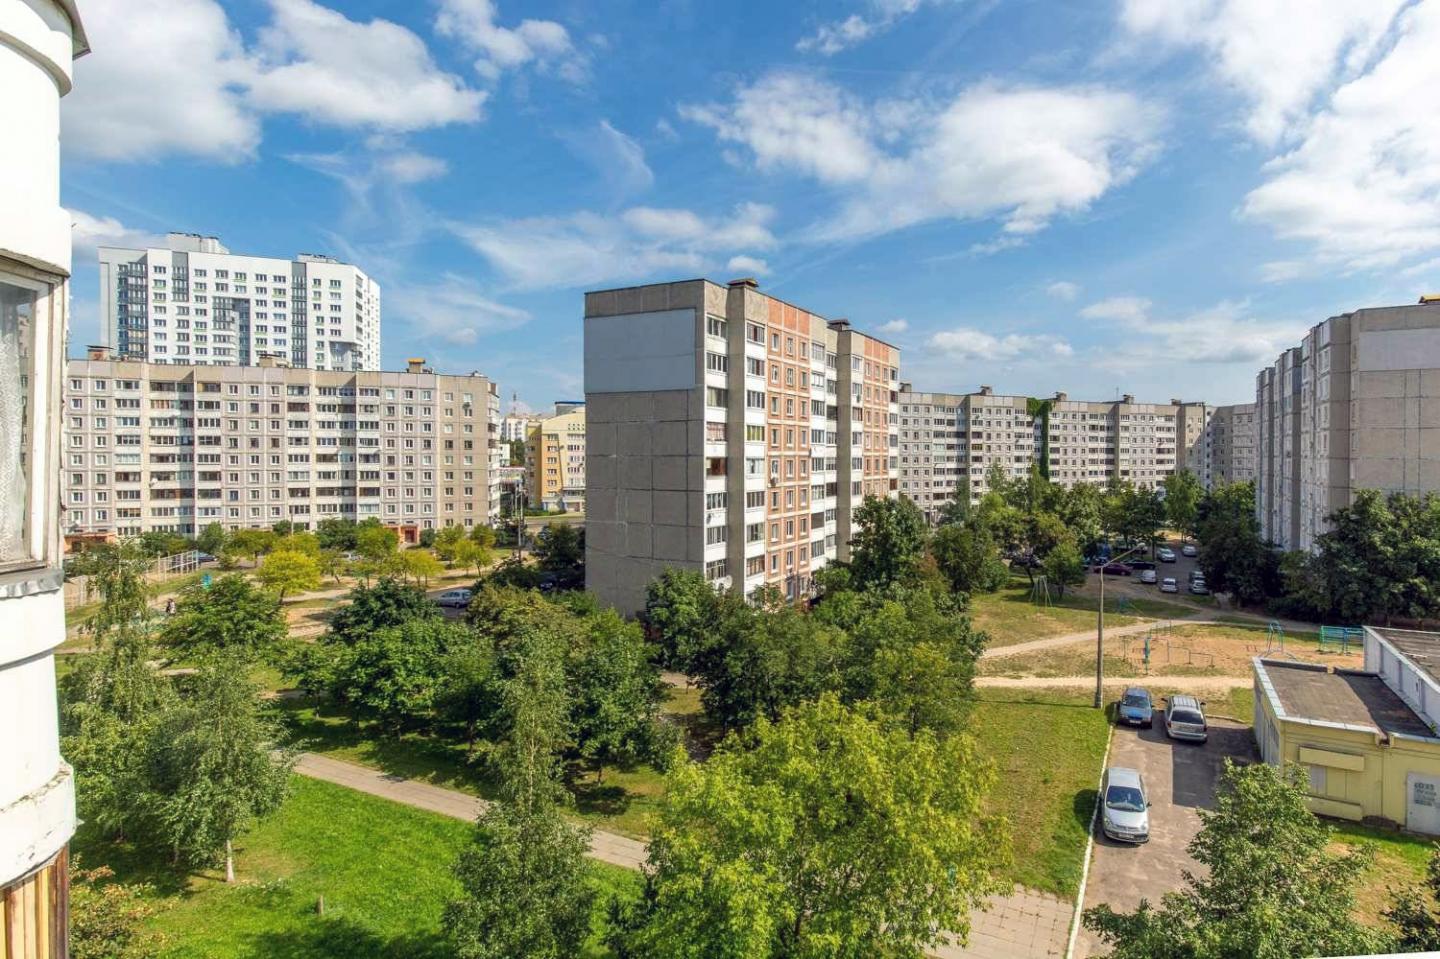 Недвижимость в Покровске: что нужно знать, собираясь приобретать жилье